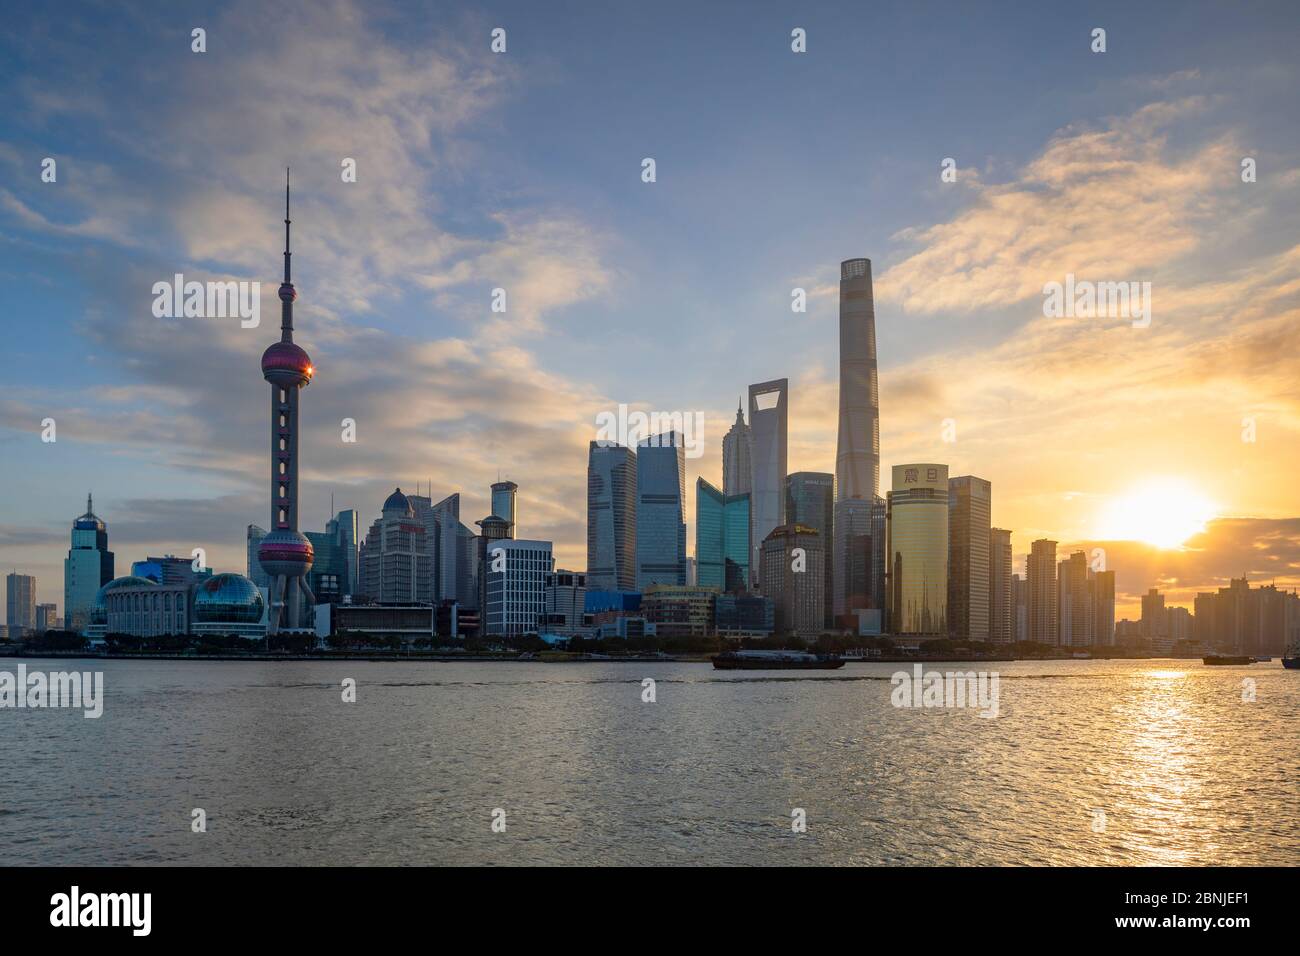 Skyline of Pudong at sunrise, Shanghai, China, Asia Stock Photo